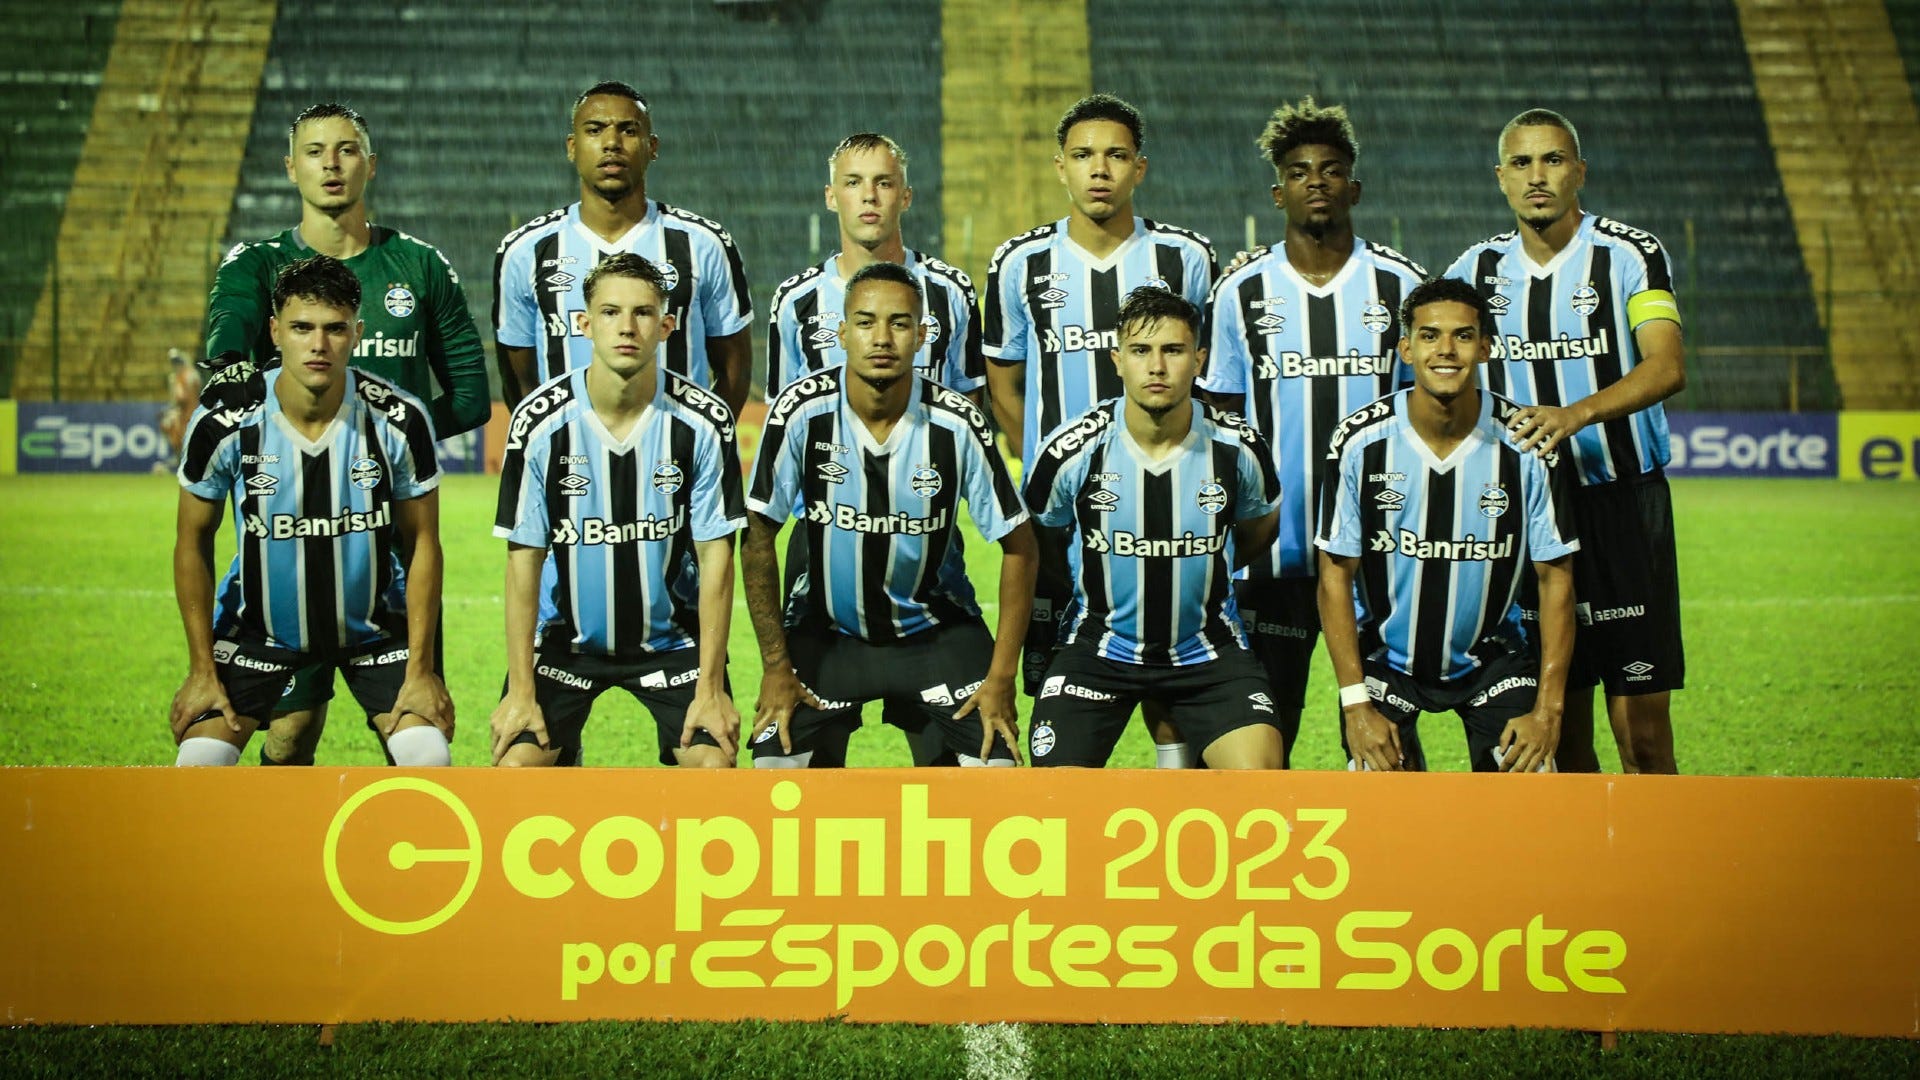 Grupo do Atlético-MG na Copinha 2023: times, jogos, datas e horários